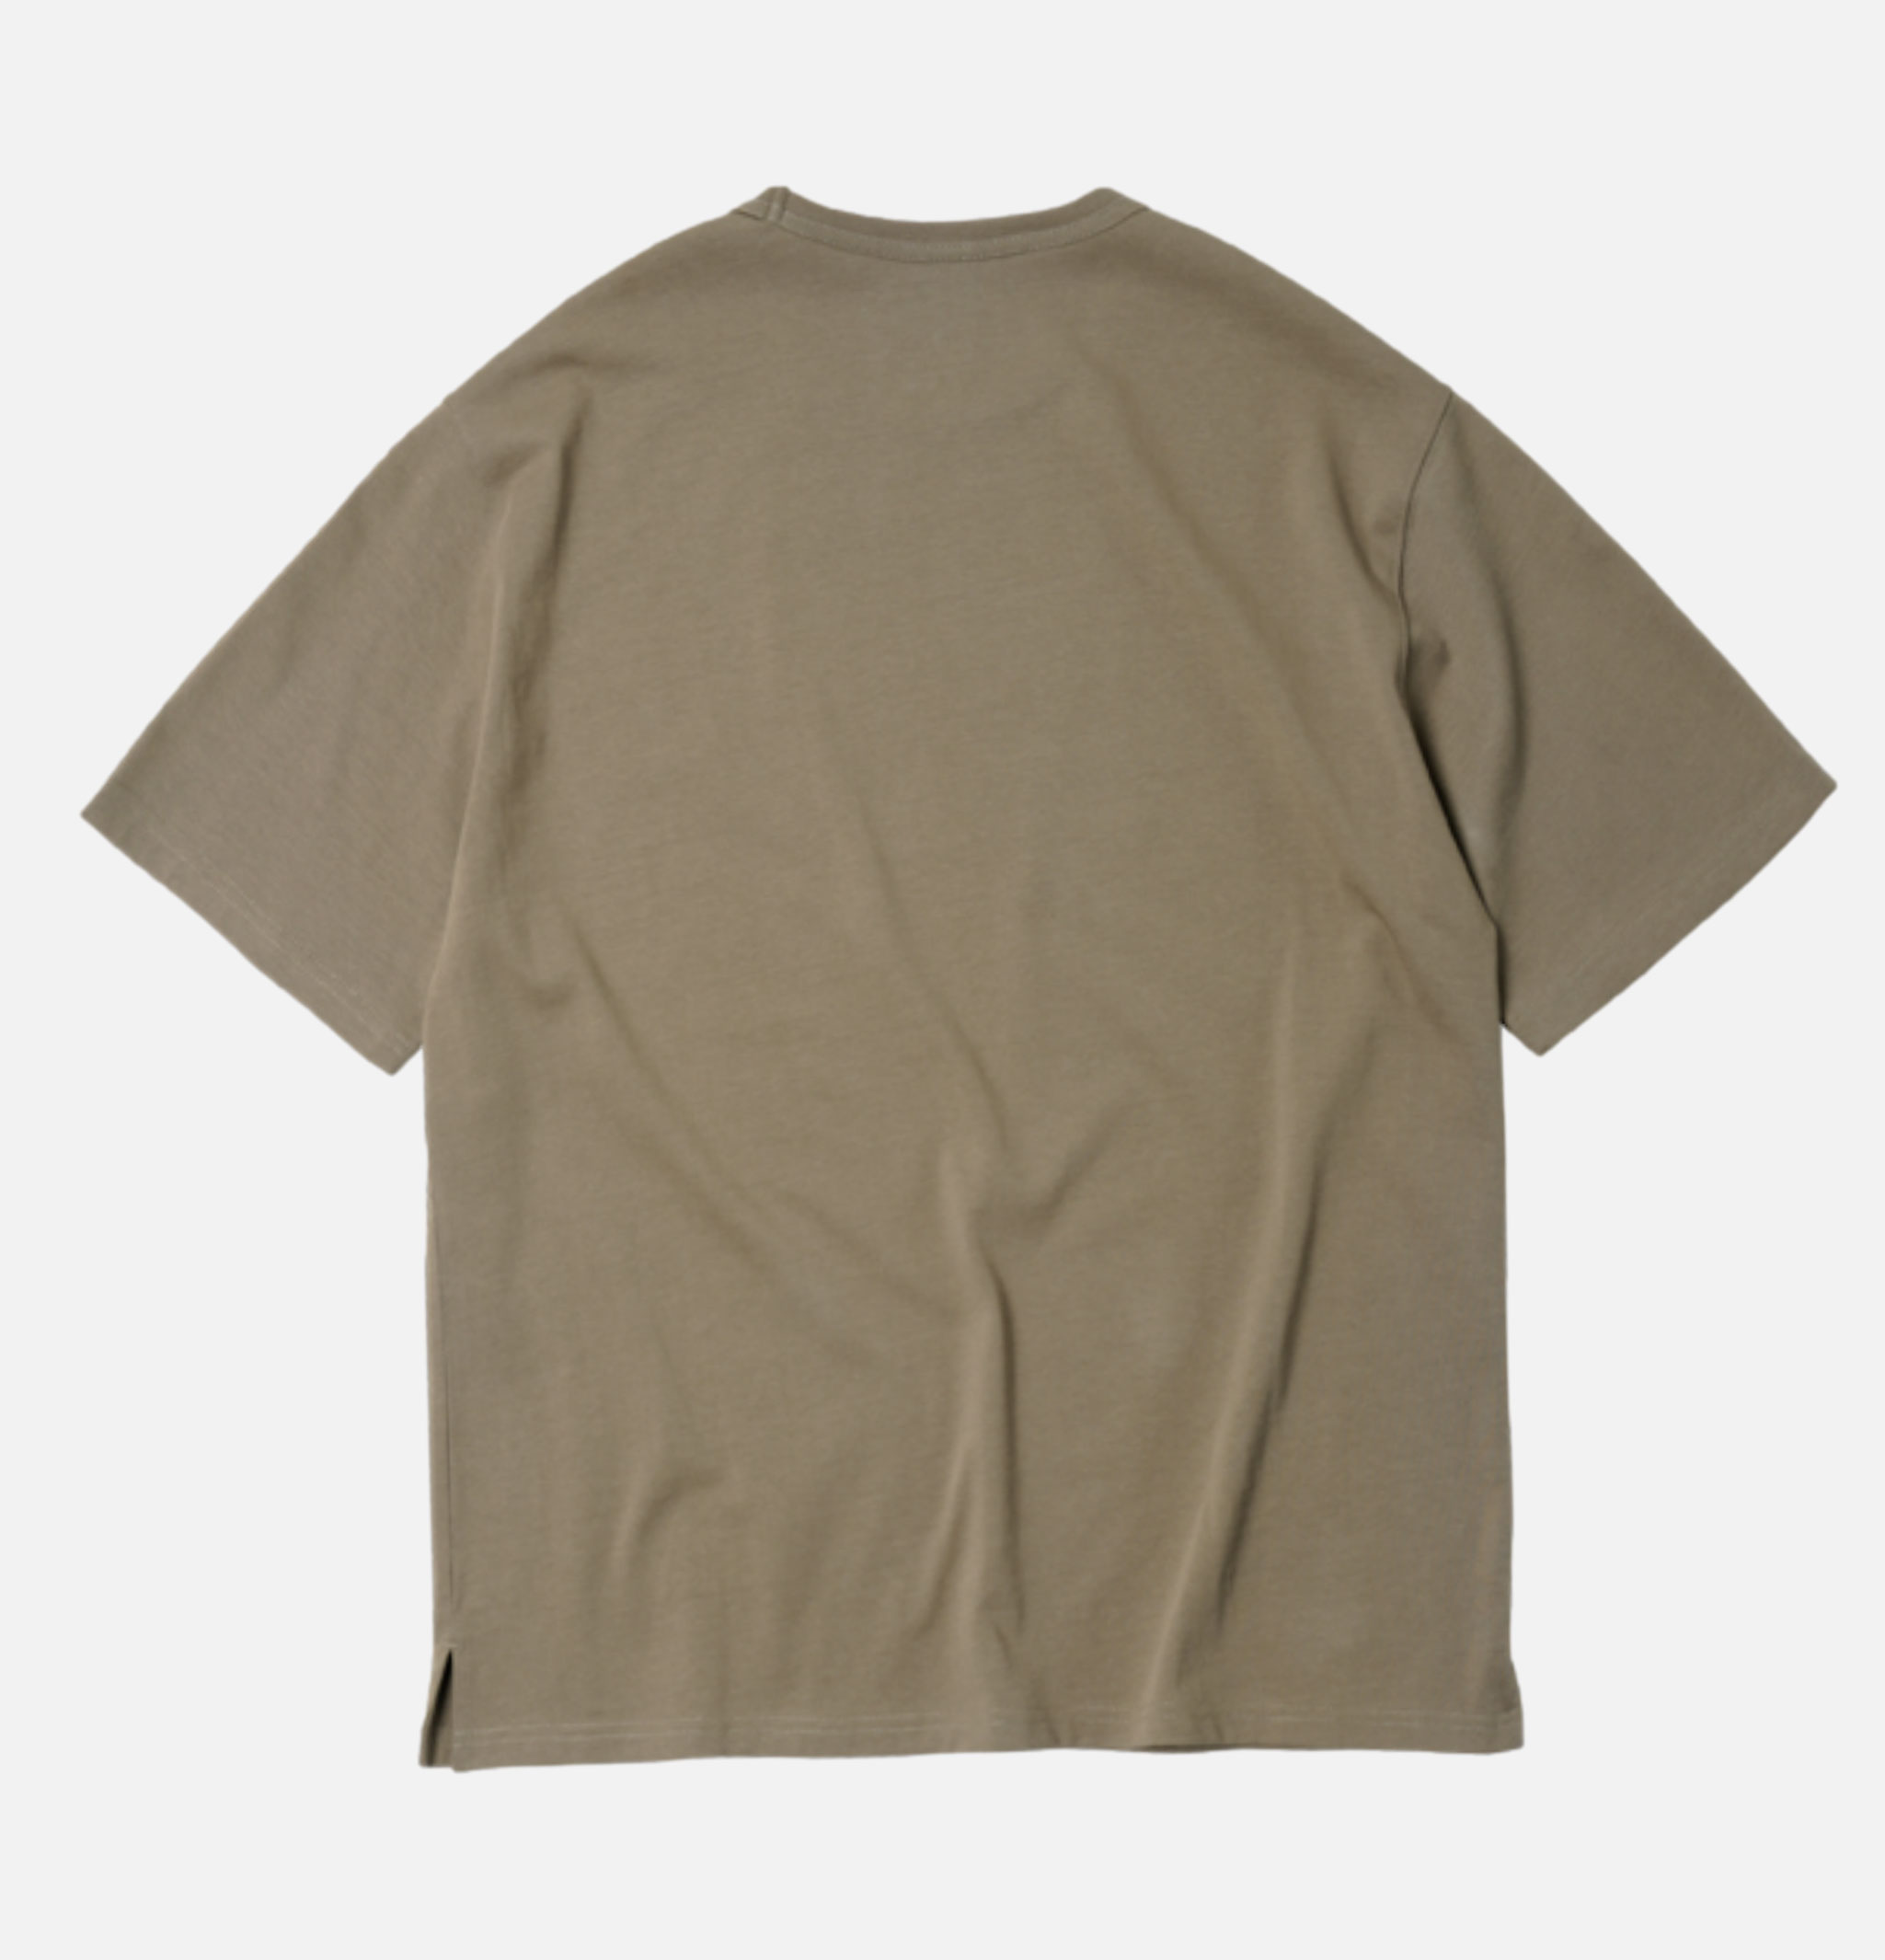 T-shirt Frizmworks Oversize Double Rib Tee Mud.